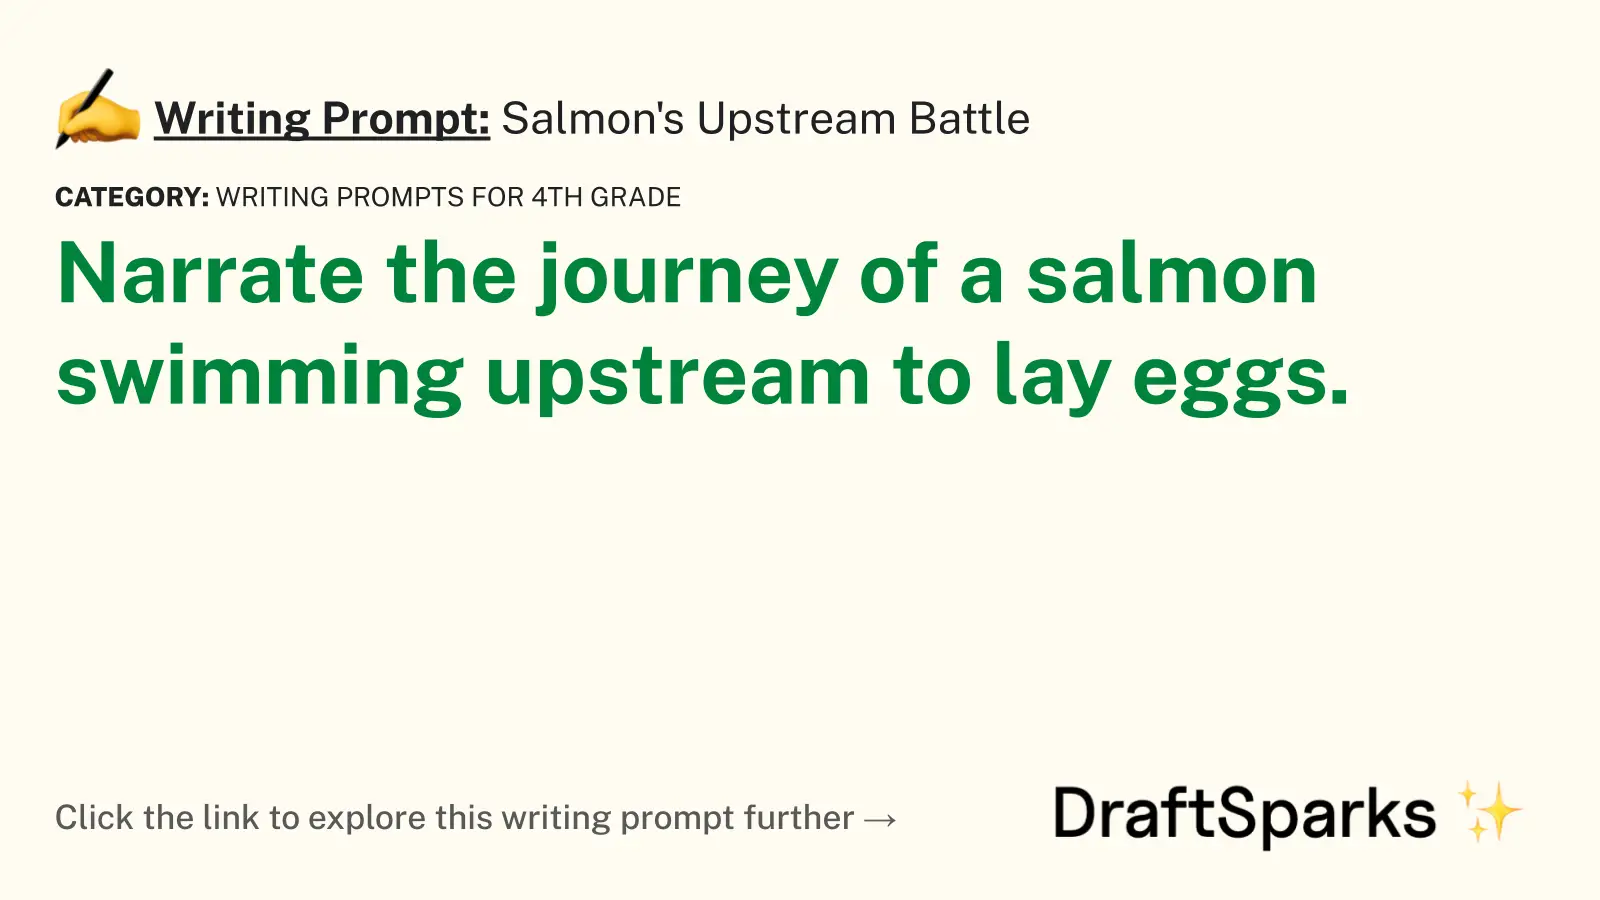 Salmon’s Upstream Battle